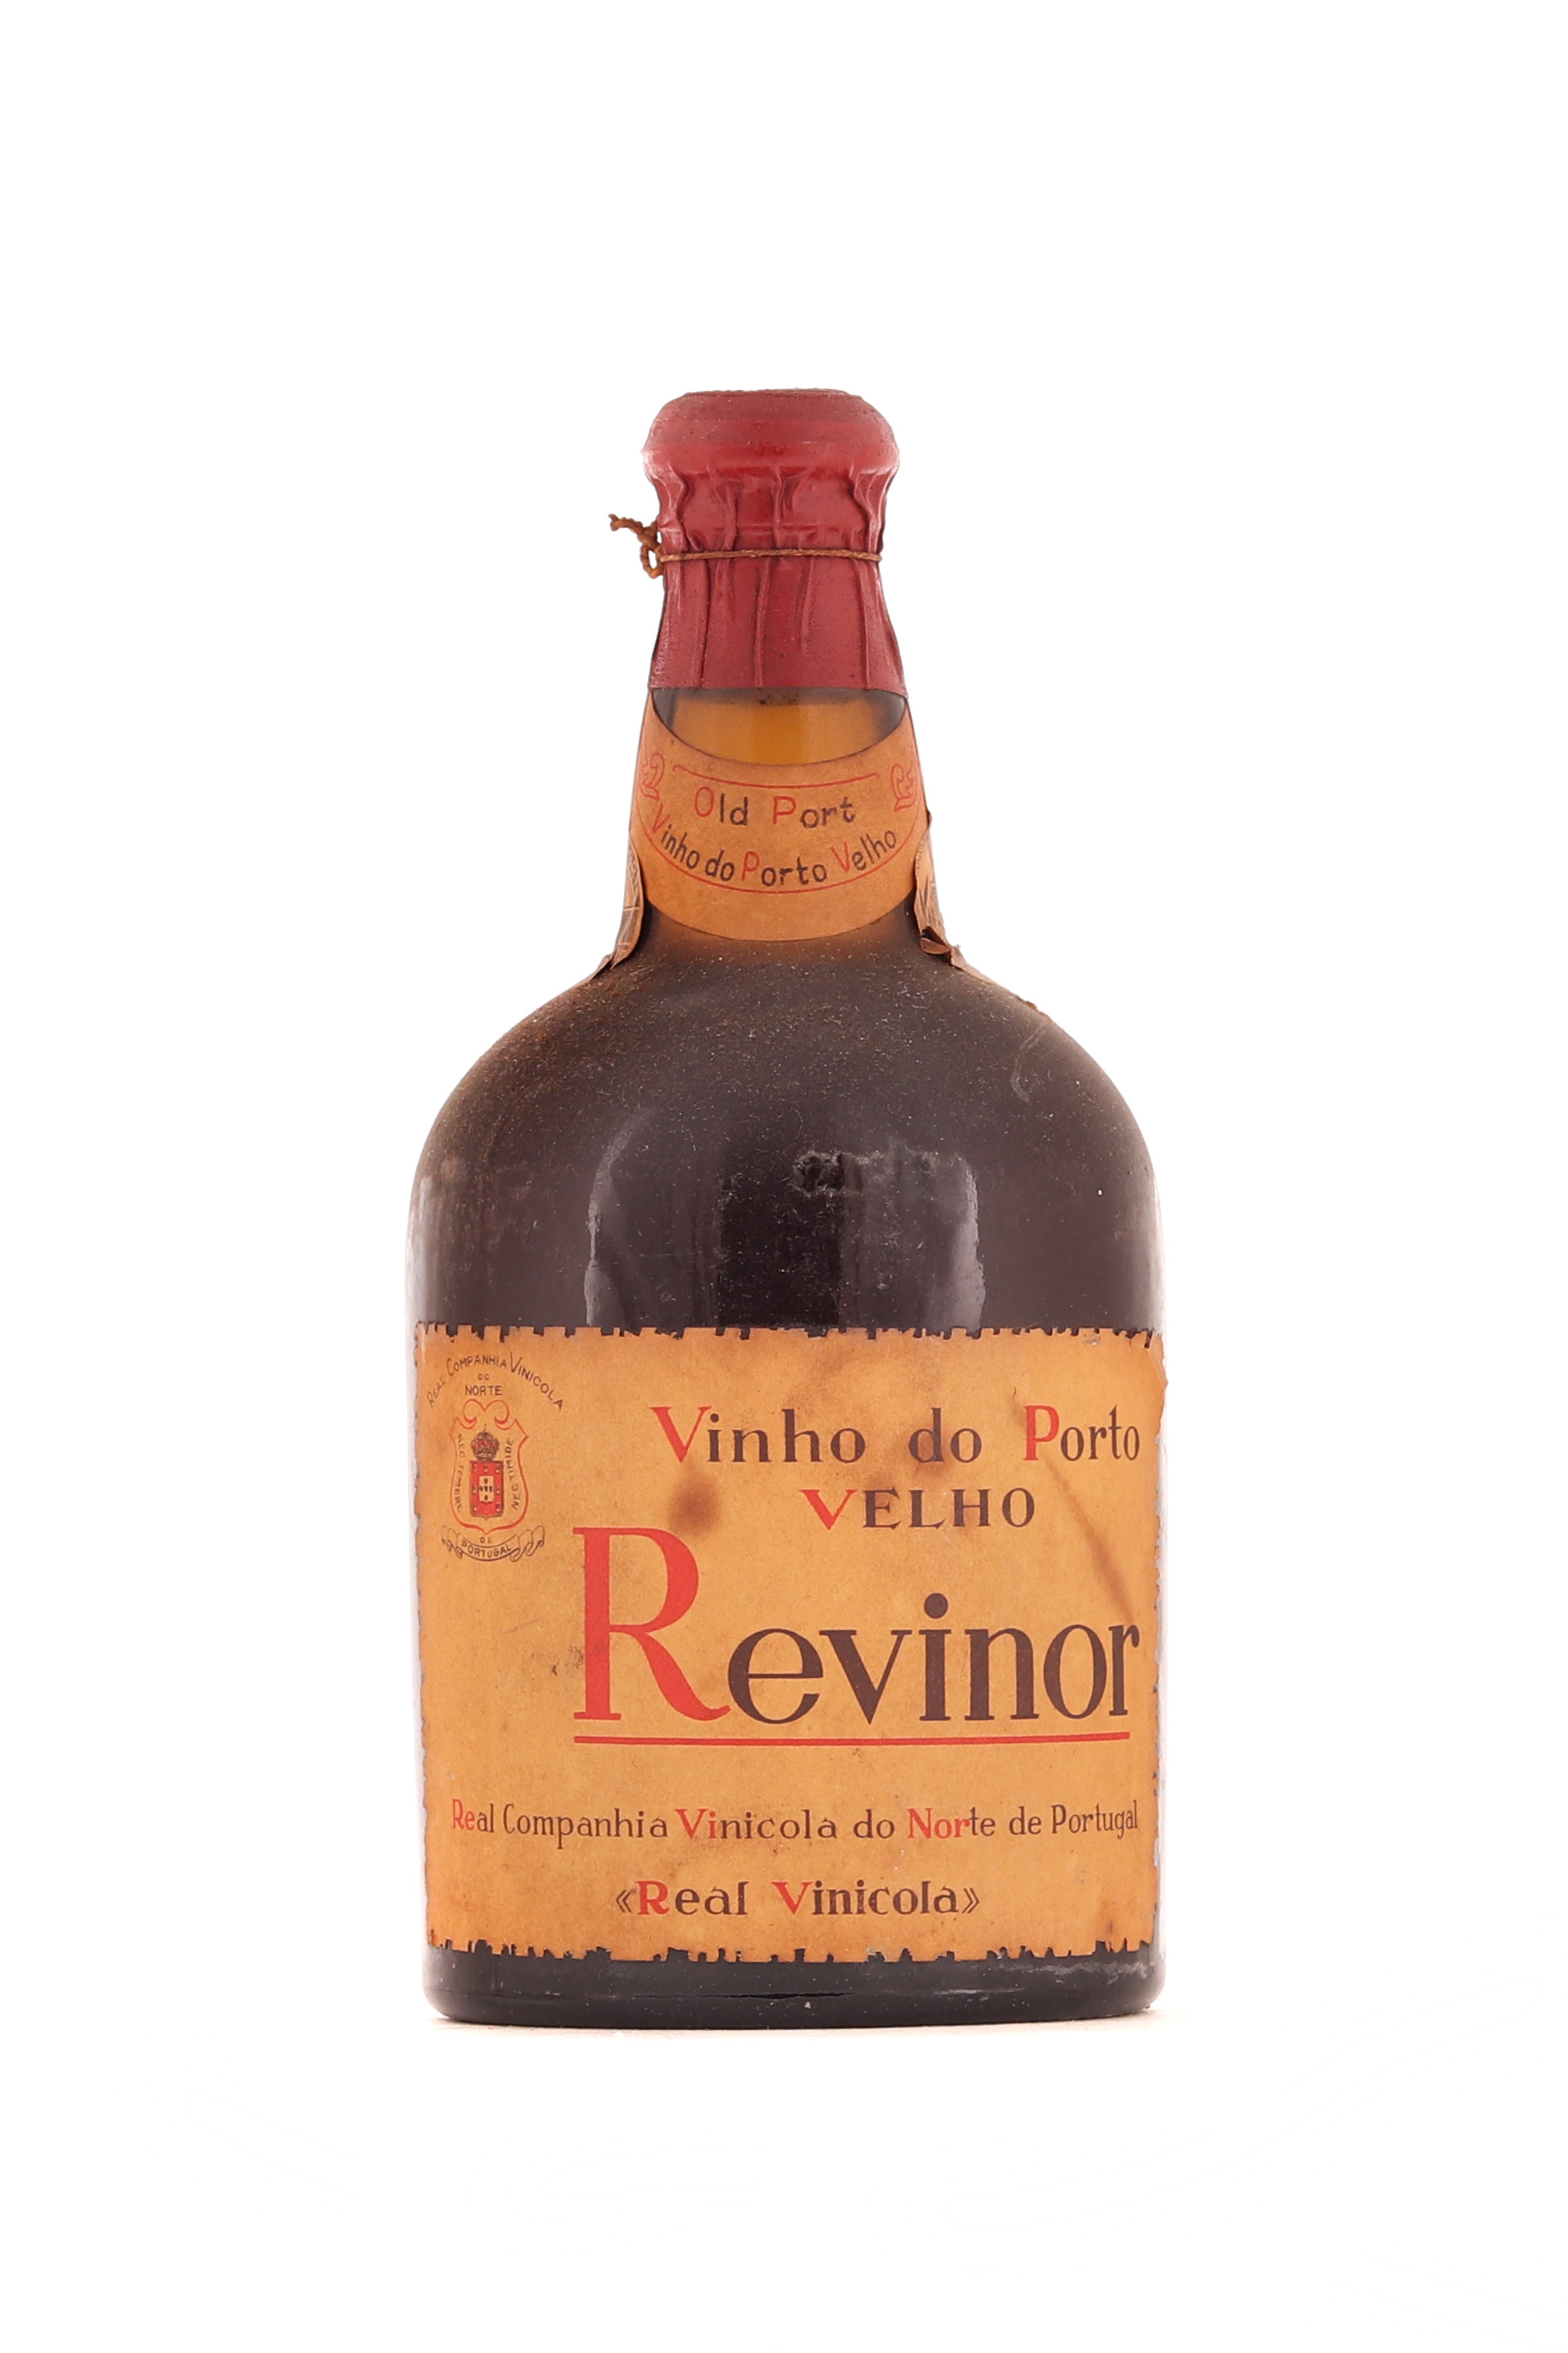 Vinho do Porto Velho, Real Vinícola - Revinor